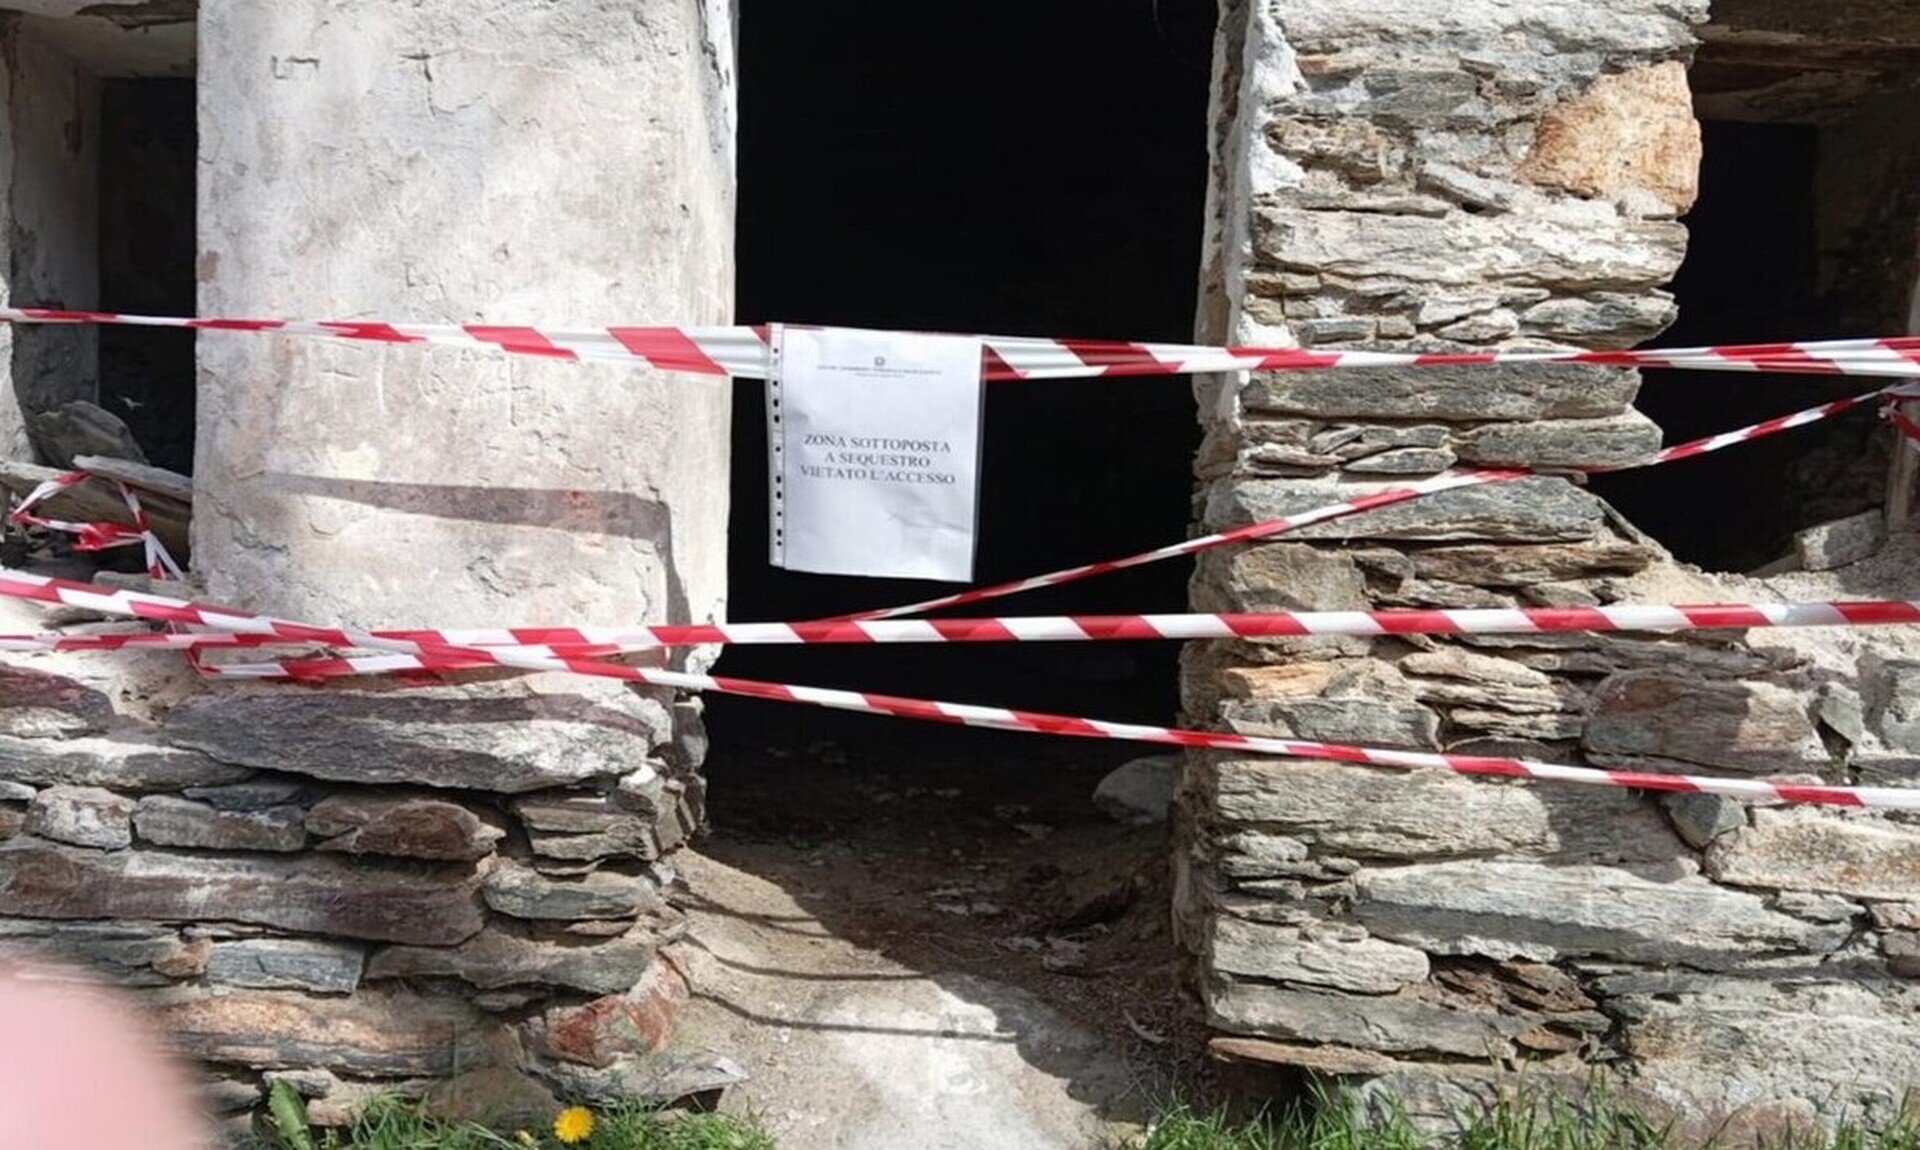 Ιταλία: Γαλλίδα βρέθηκε δολοφονημένη μέσα σε ερειπωμένη εκκλησία - Αναζητείται ο σύντροφός της